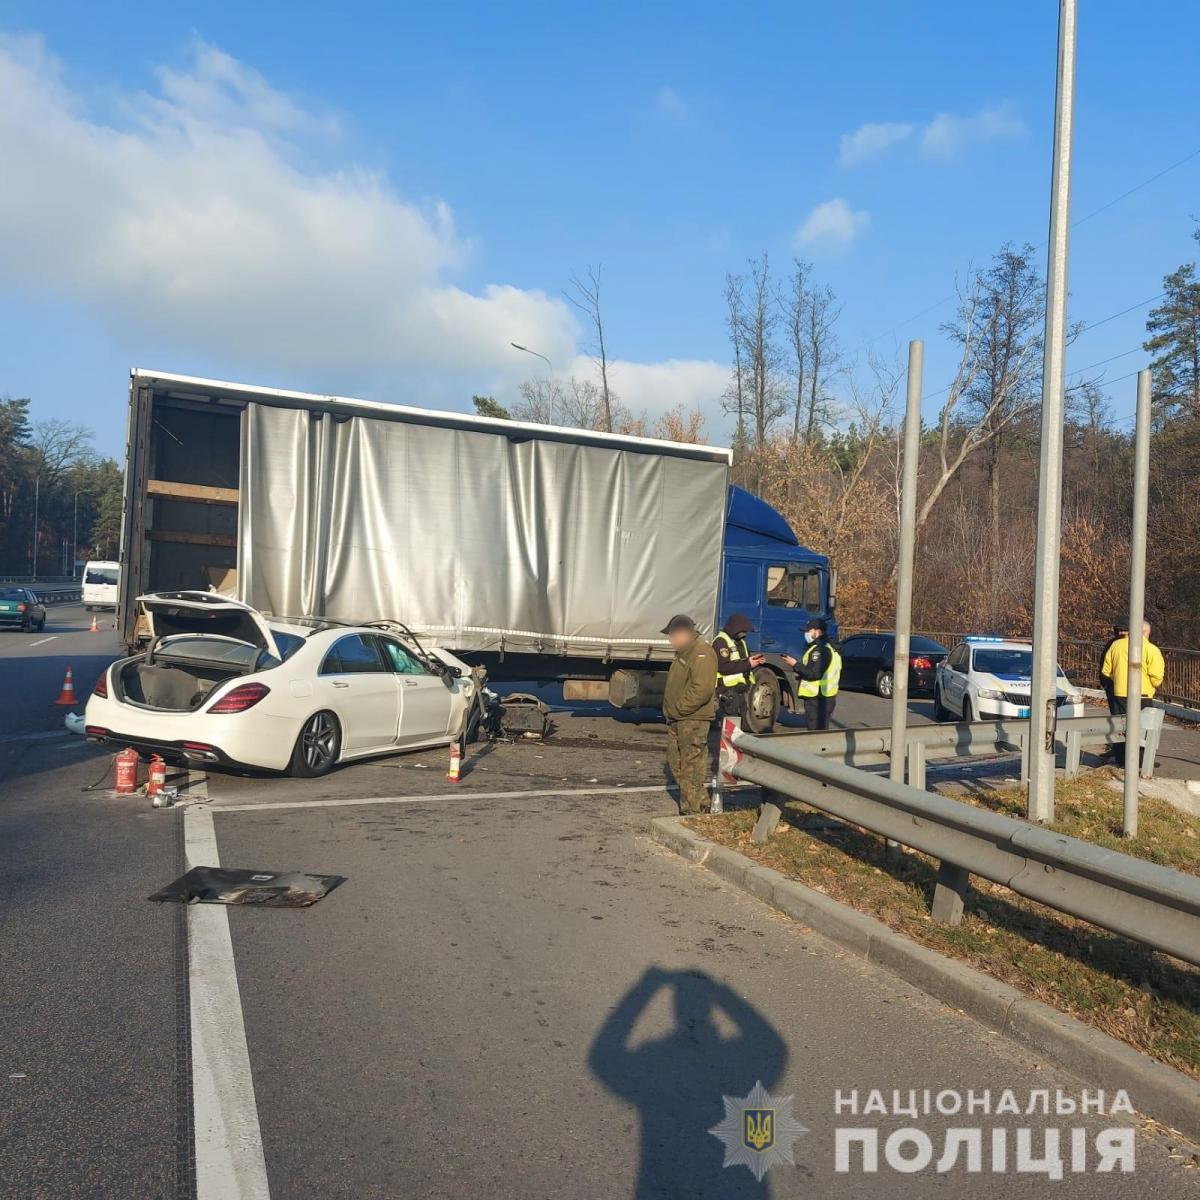 Под Киевом Mercedes протаранил грузовик: в пострадавшем участнике ДТП узнали 'слугу народа'